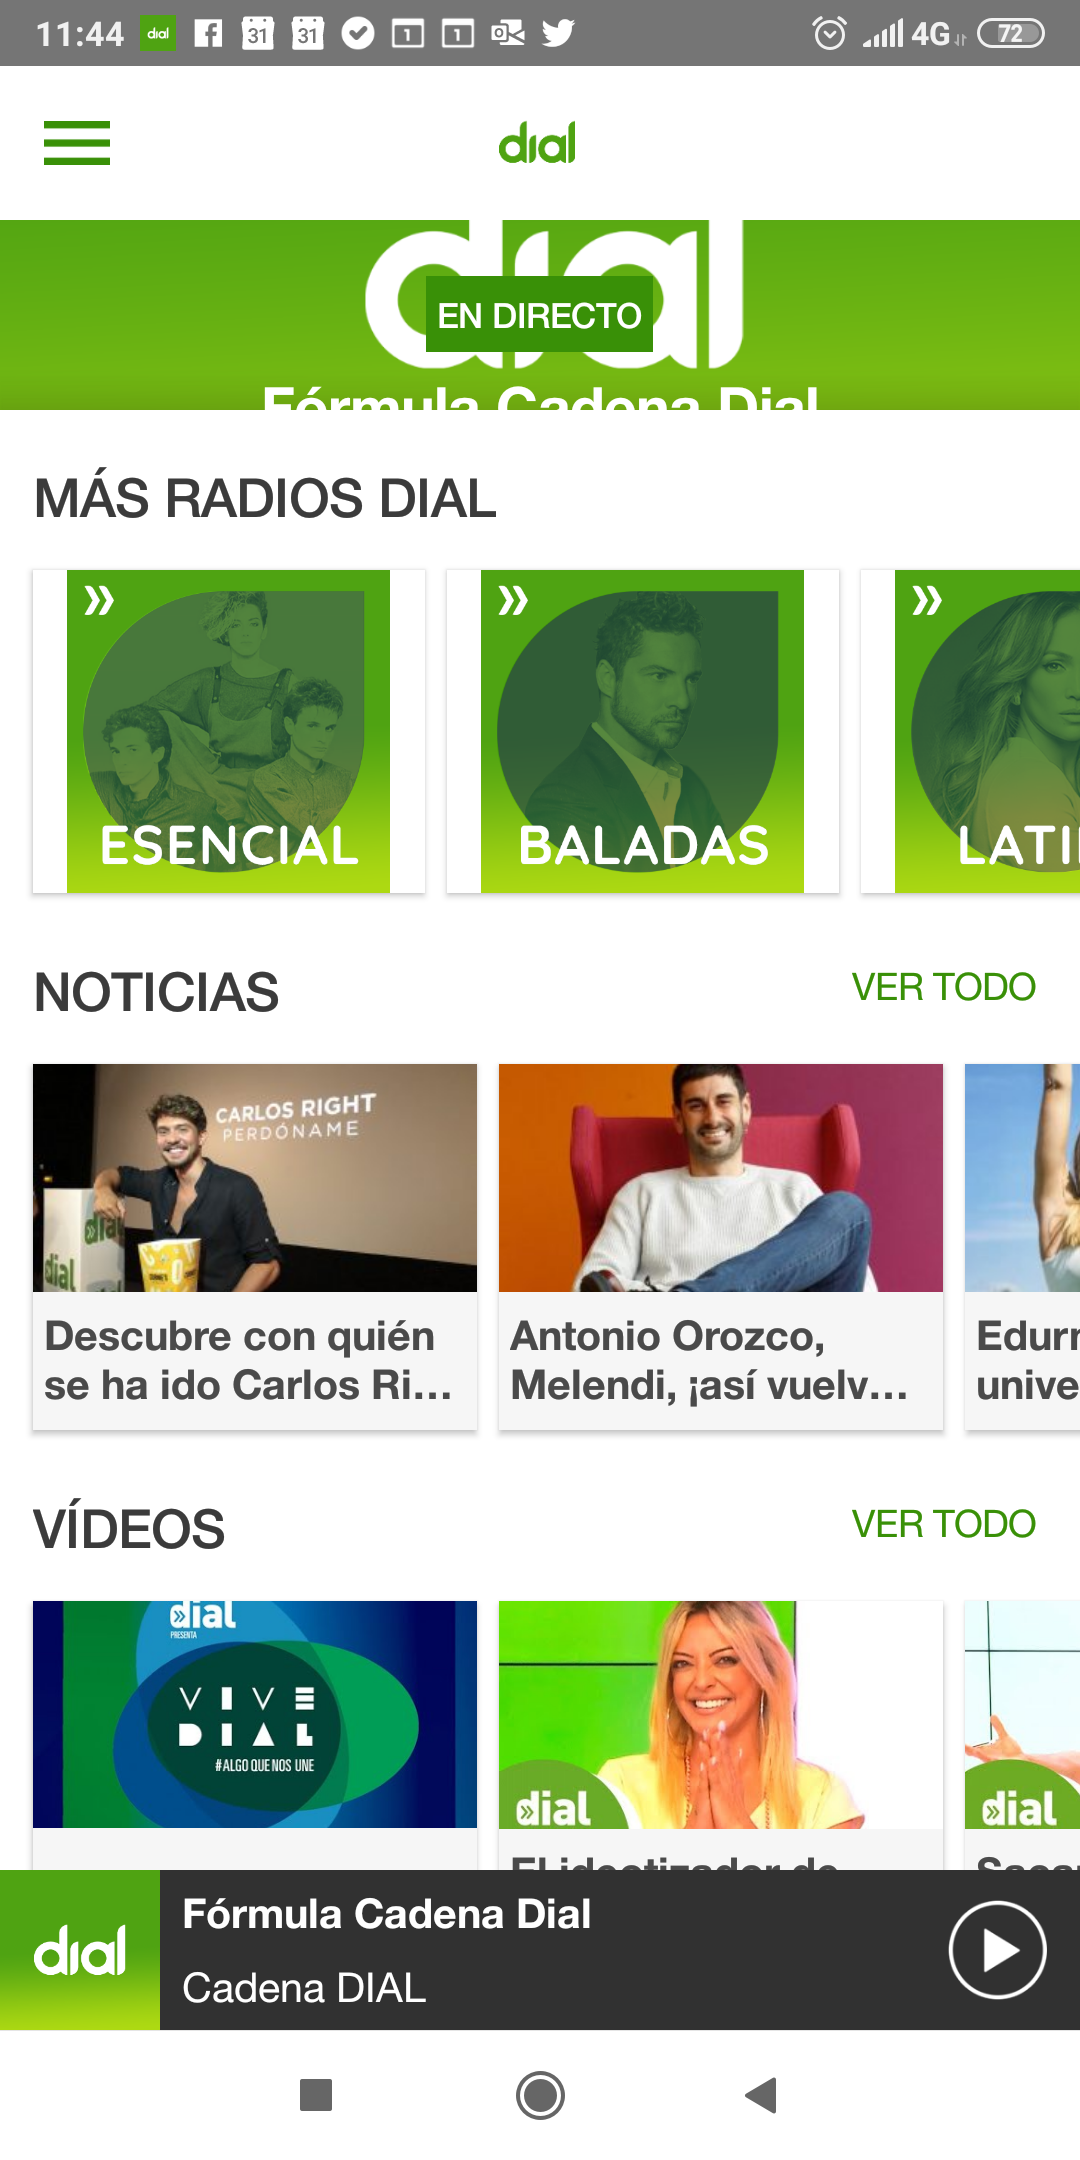 Un #ViveDial lleno de sorpresas: nuevo logo, app, digitales disco de - Cadena Dial